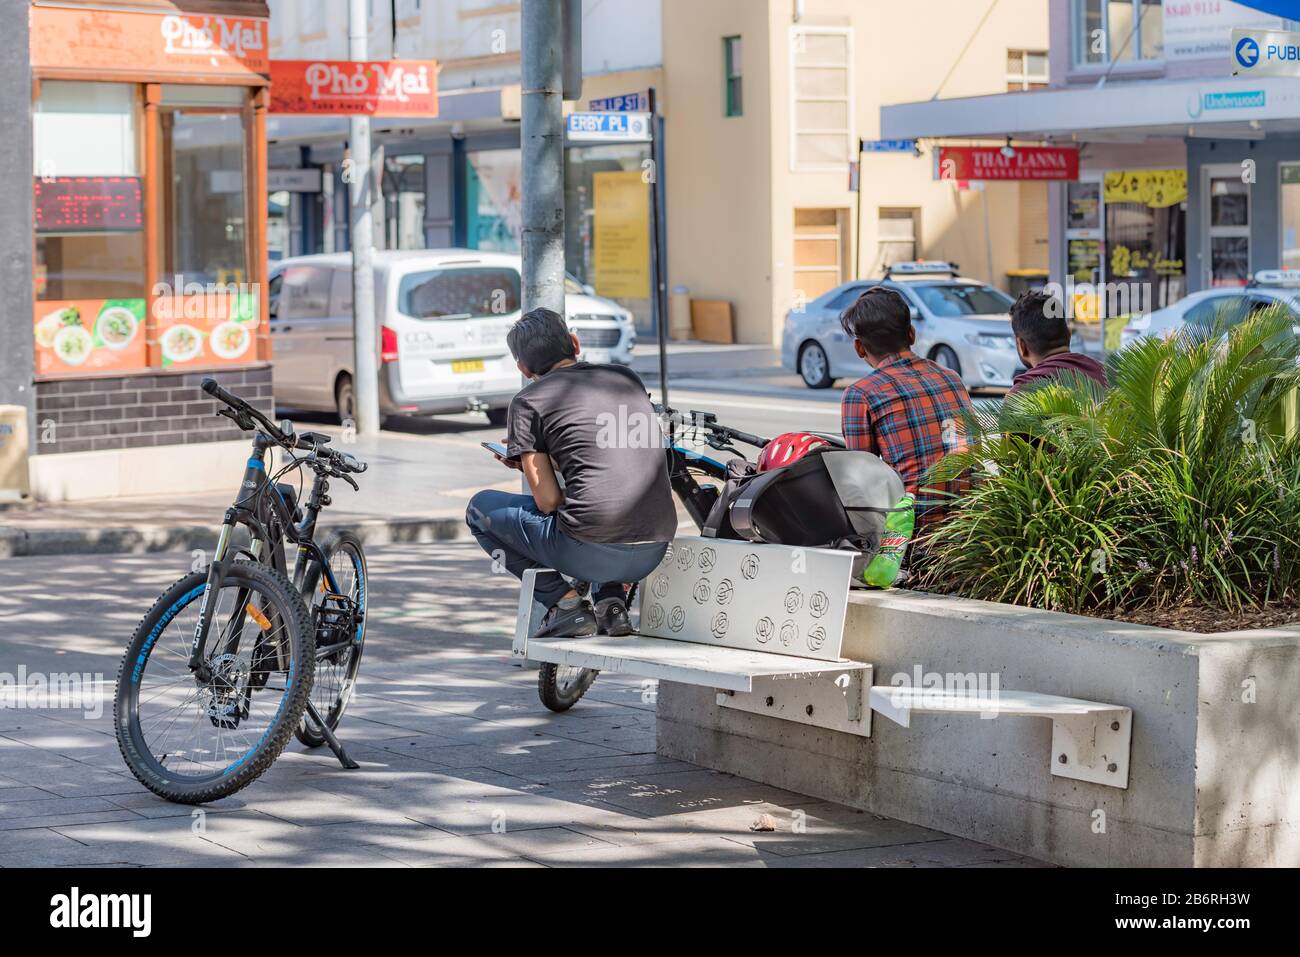 Fahrradkuriere sitzen und warten auf Arbeit in der Nähe lokaler Restaurants in einem kleinen Park in Parramatta, New South Wales, Australien Stockfoto